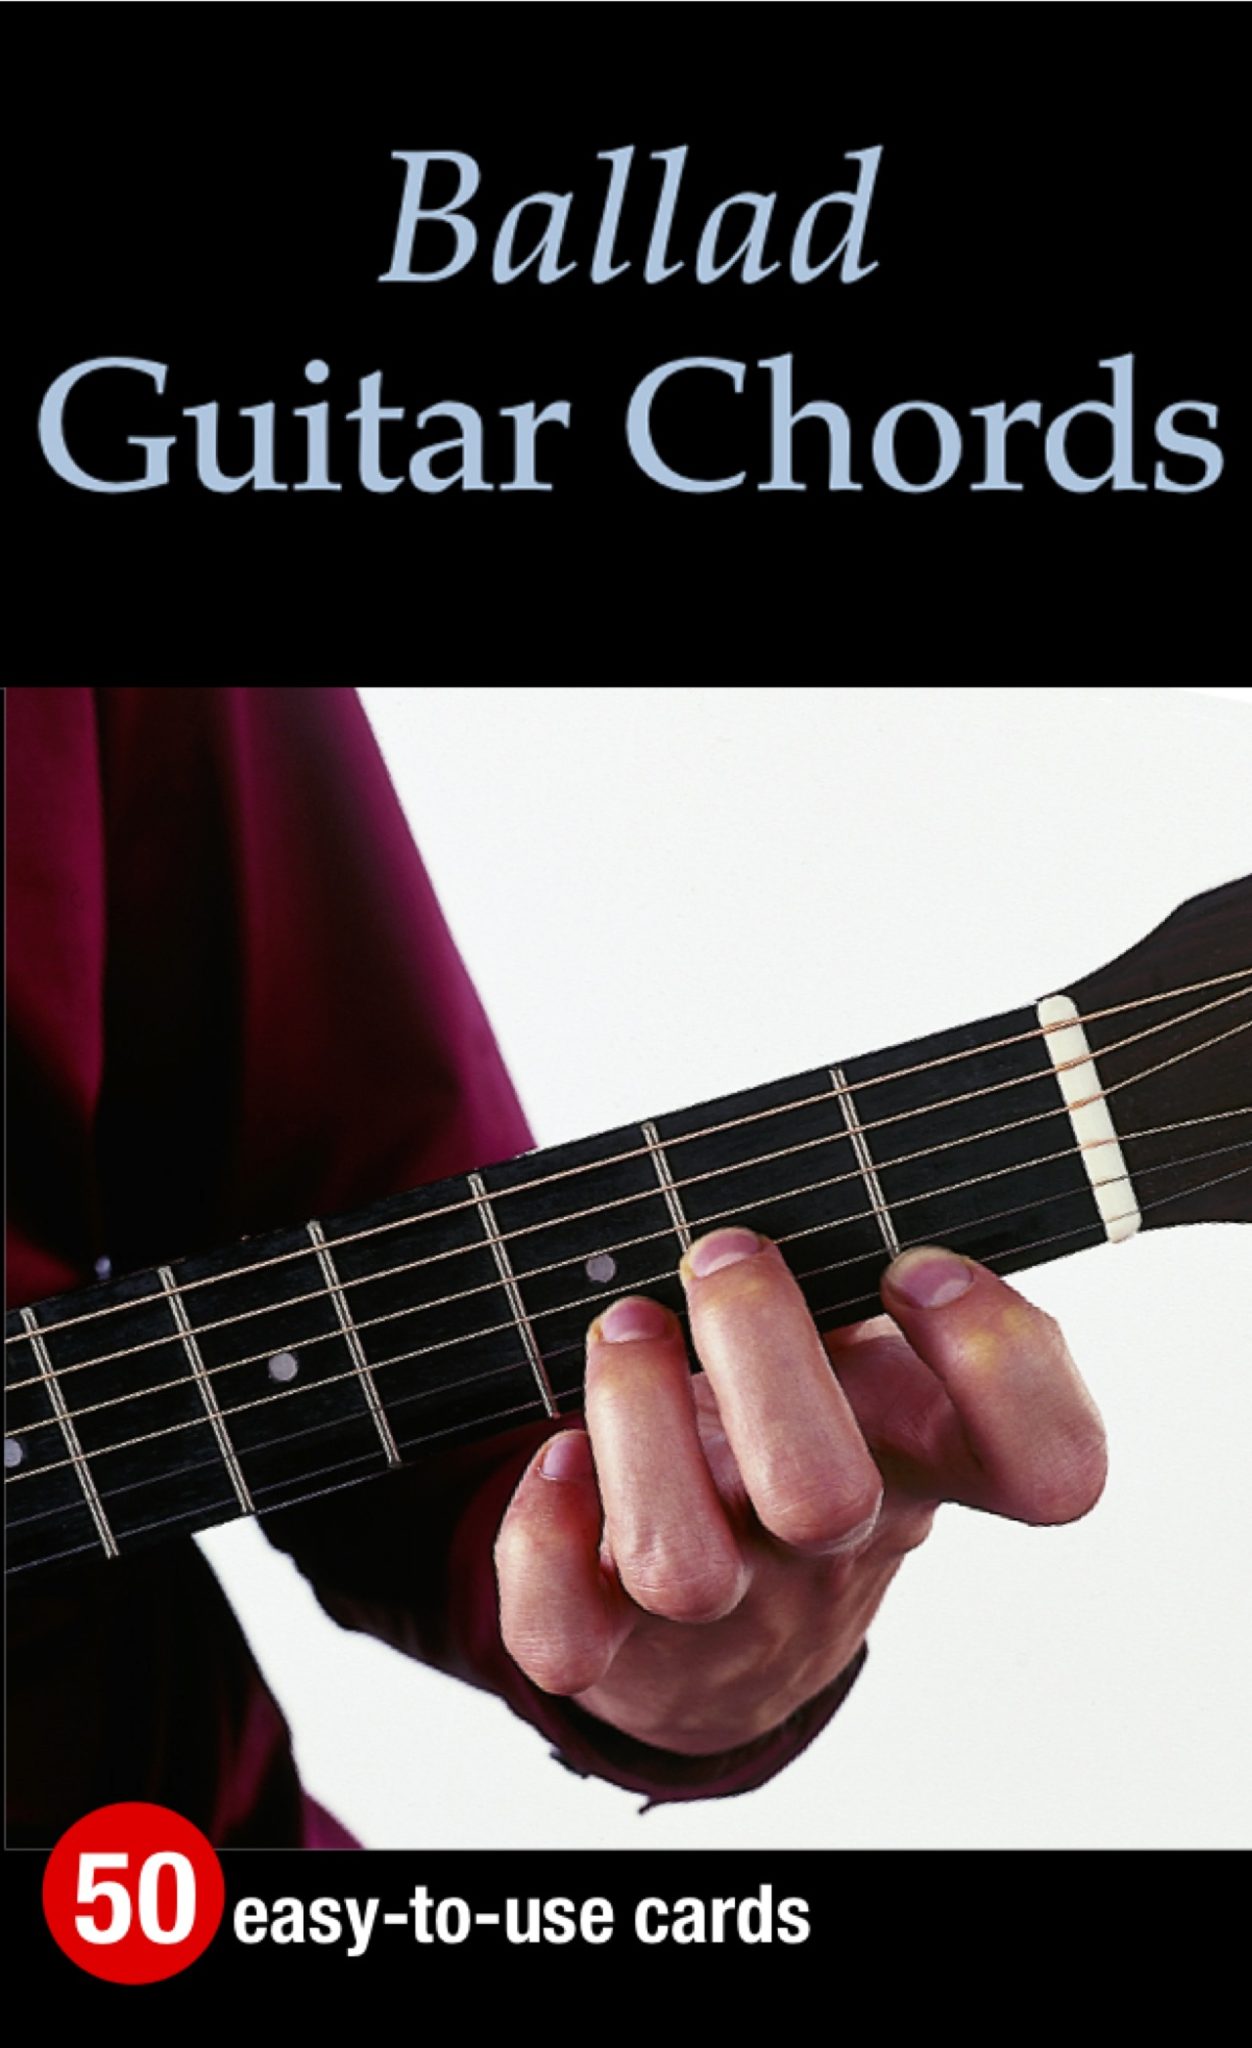 Ballad Guitar Chords